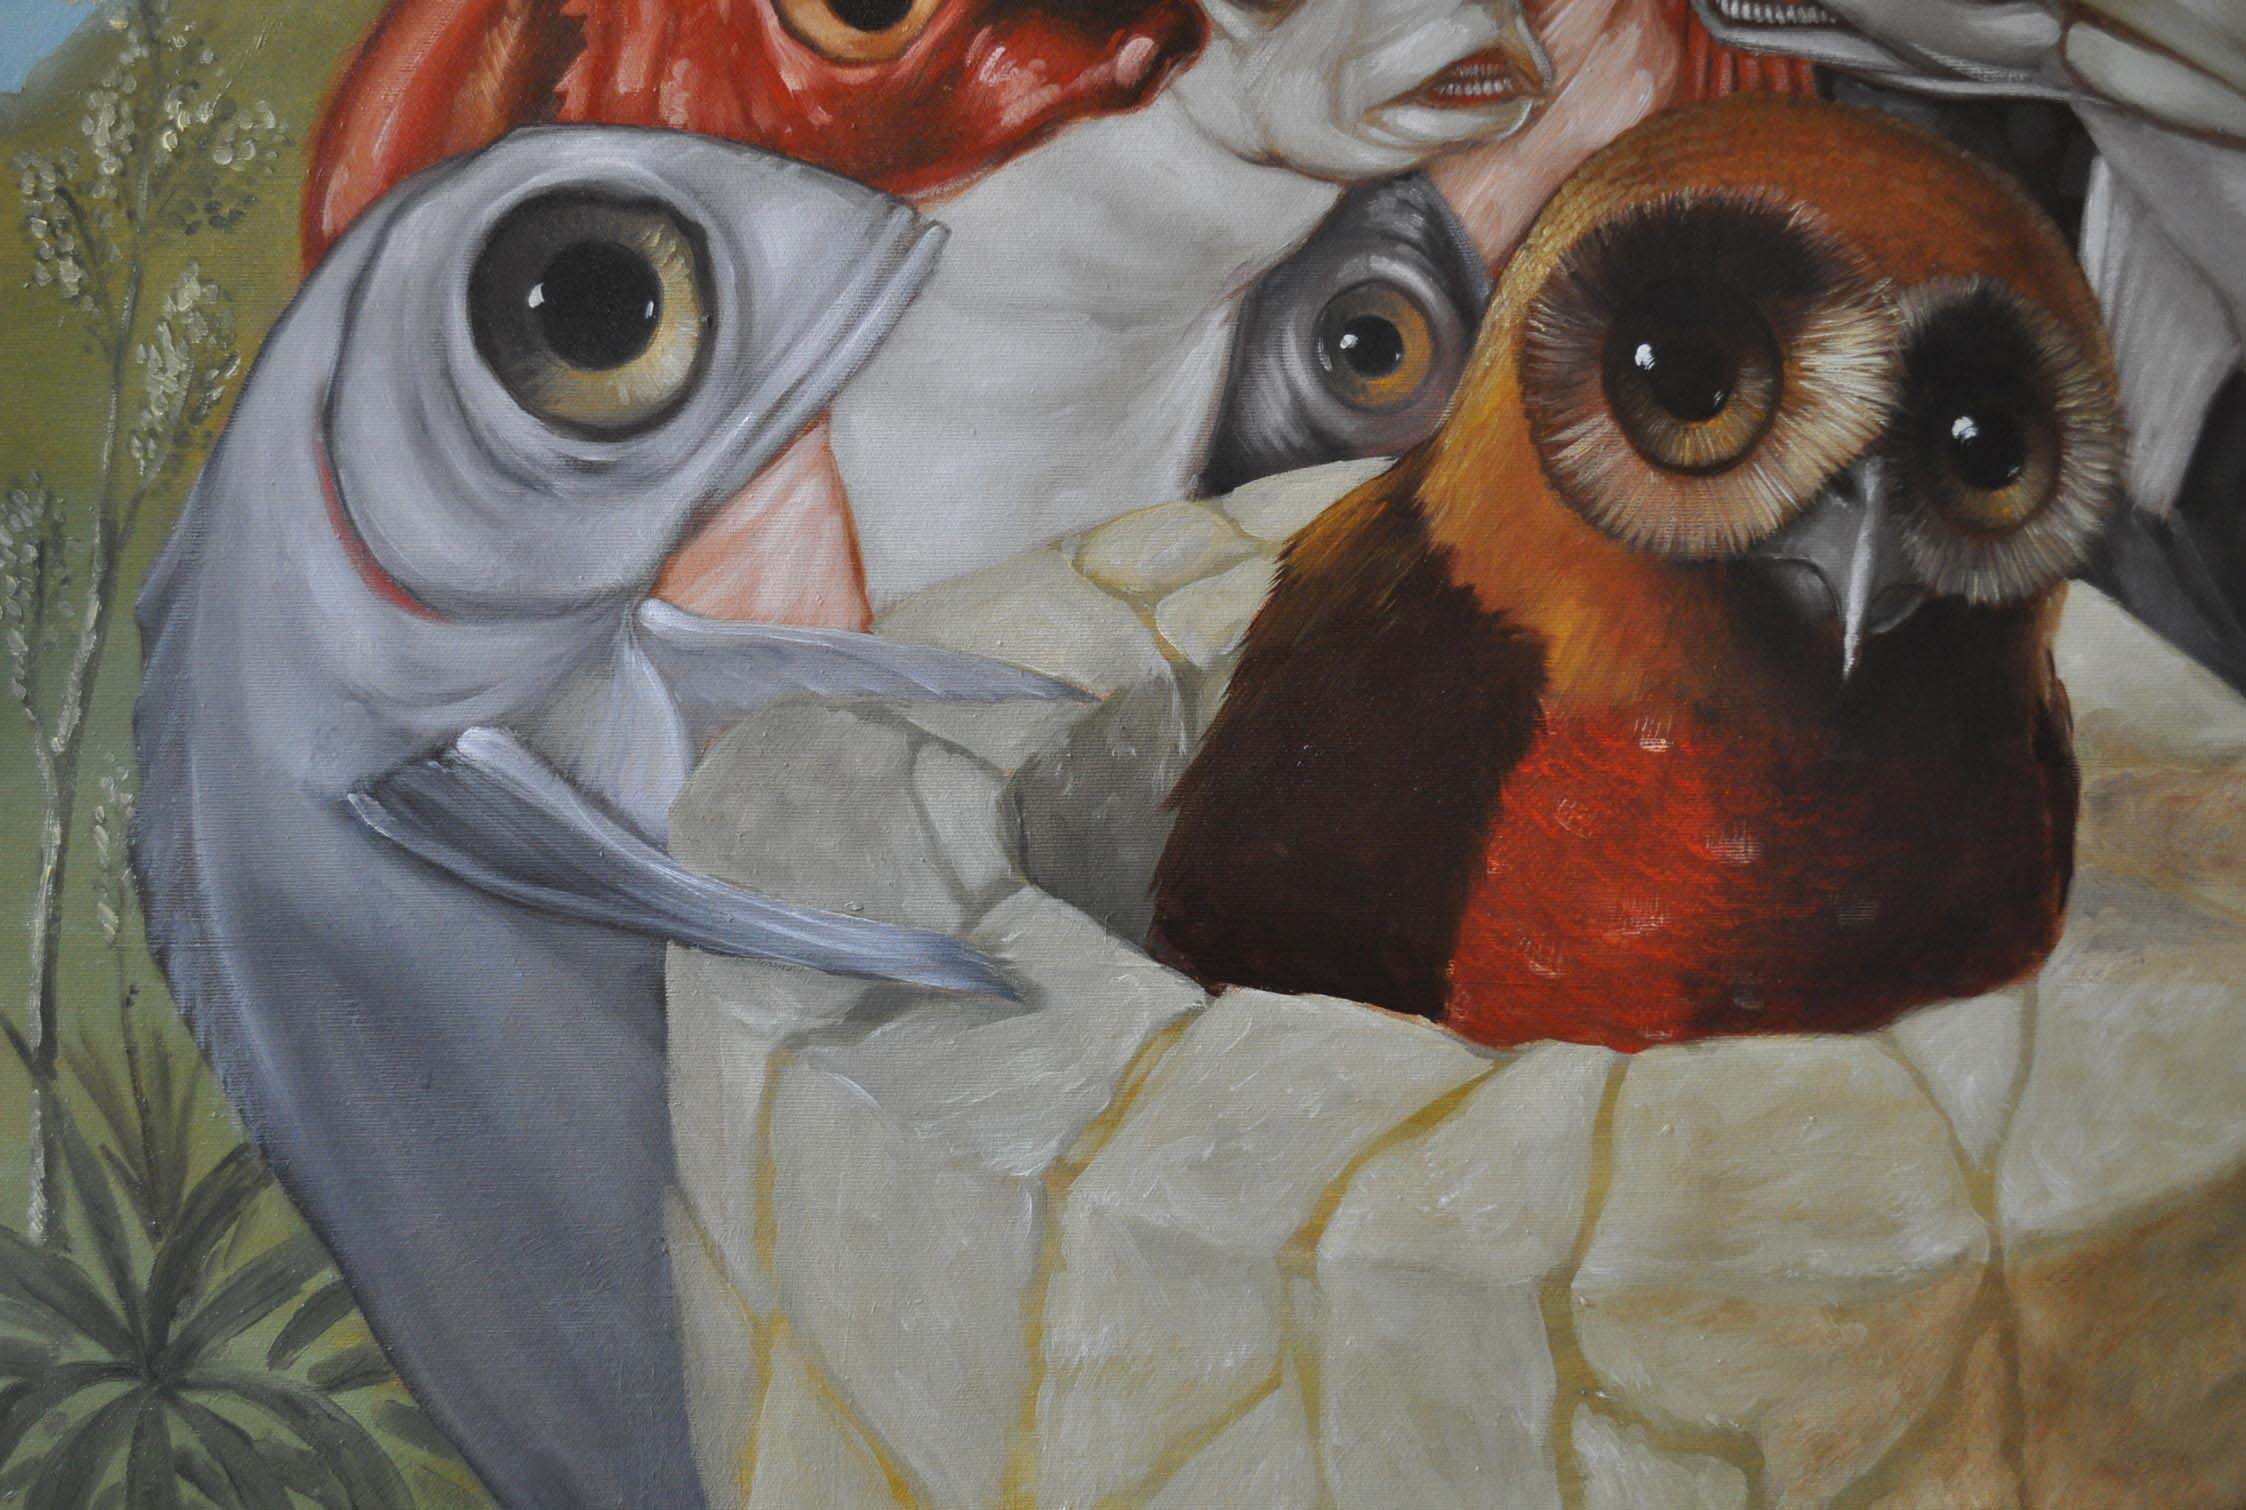 Détail de la cohouette avec un poisson à gauche qui la regarde. Il est gris, pose ses nageoires sur la margelle. Ses ouïes font un filet rouge dans le gris de sa peau.